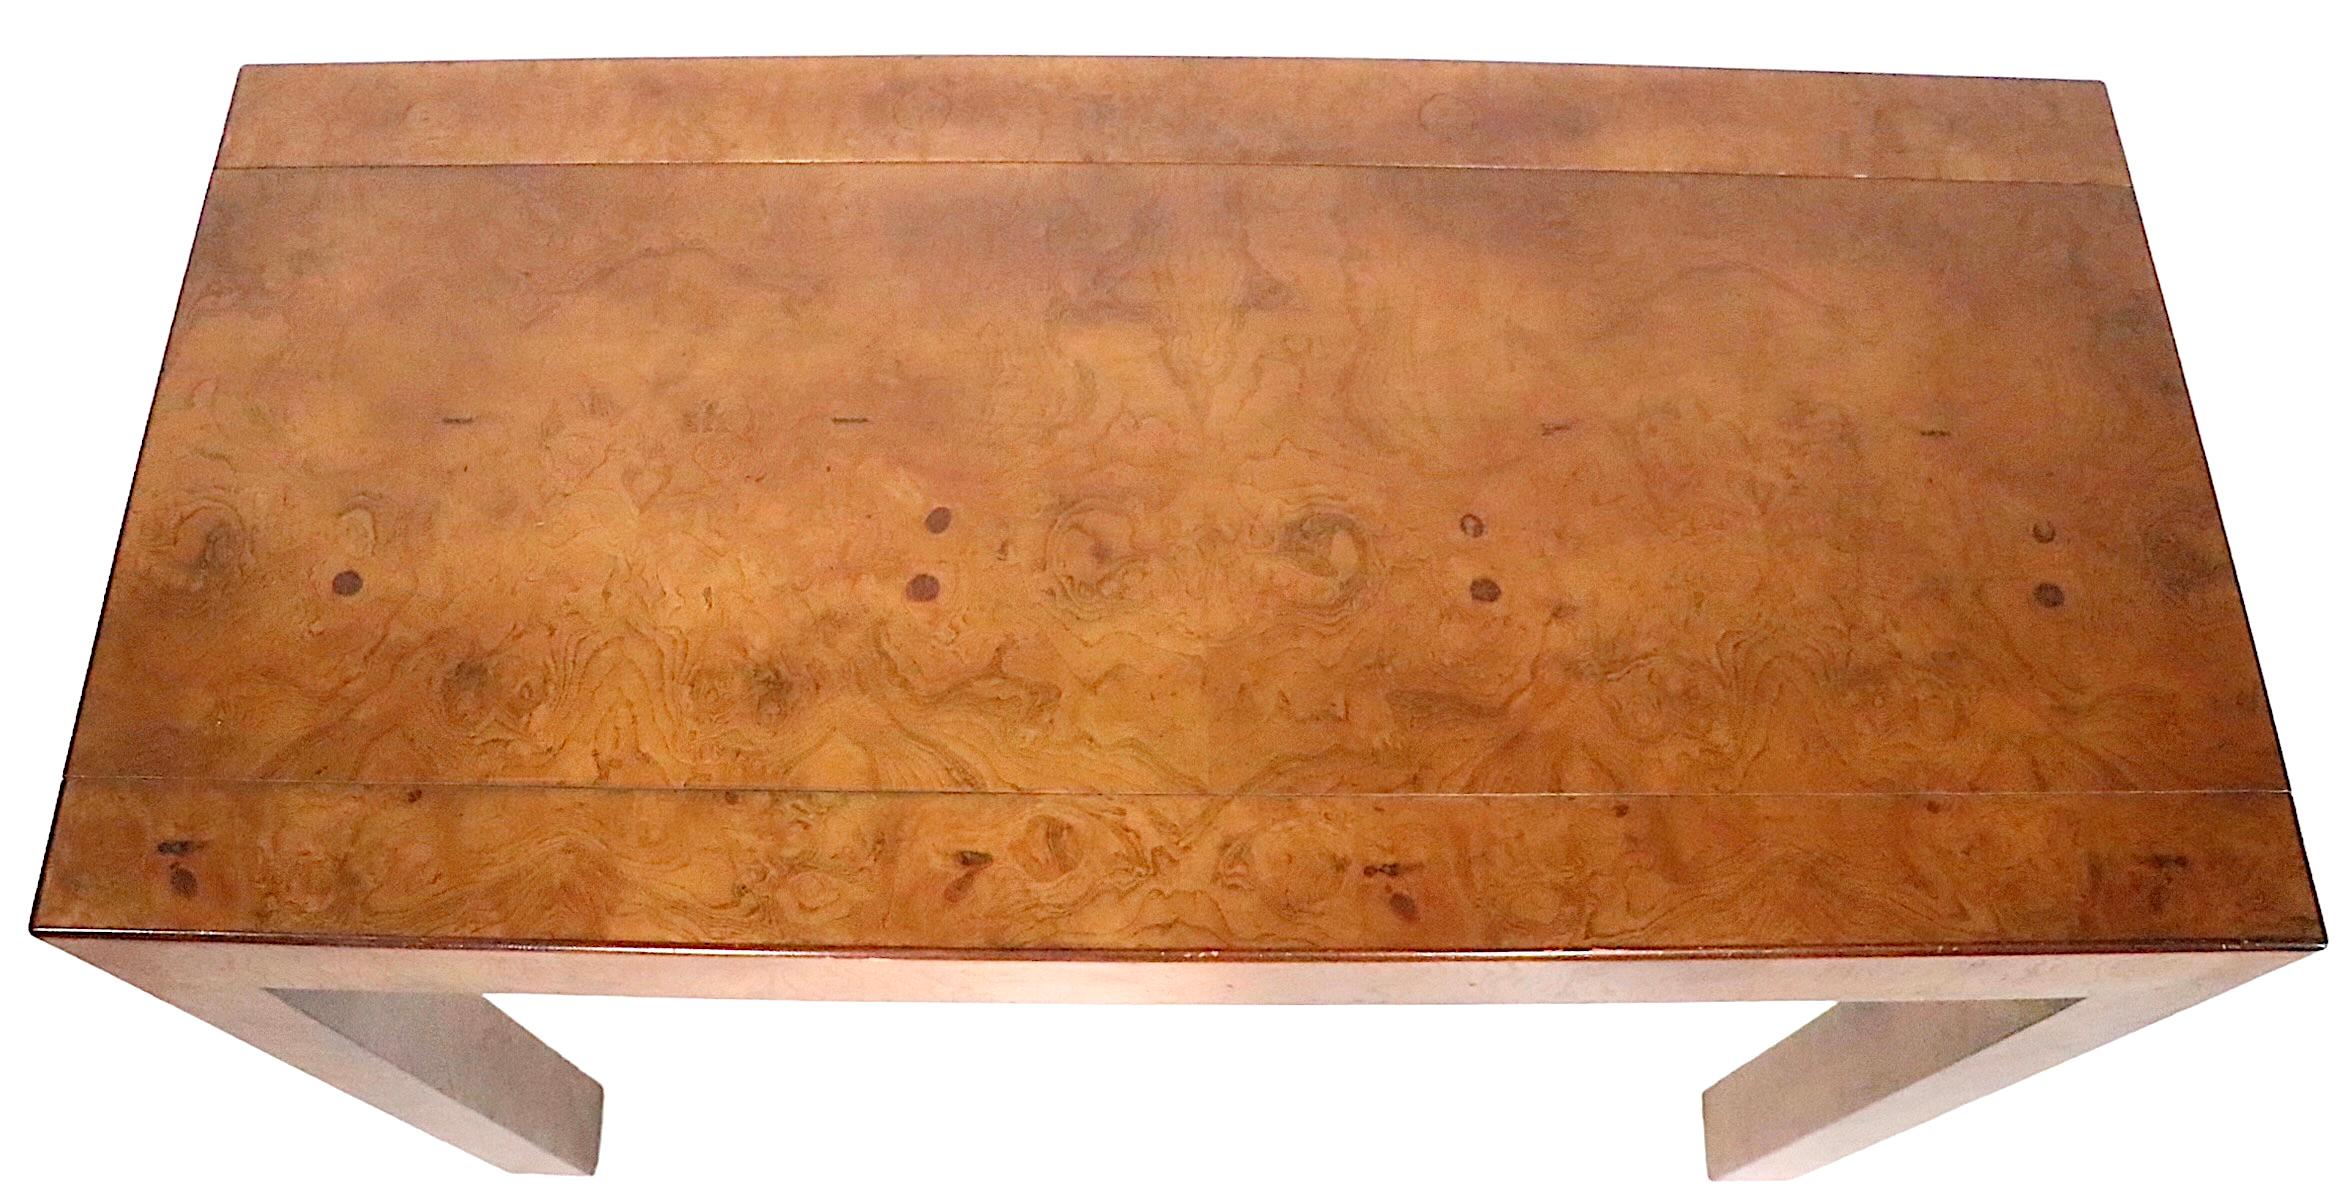 Console chic en ronce de style Parsons réalisée par John Widdicomb, vers 1950-1960. La table avait à l'origine de nombreuses feuilles qui lui permettaient de fonctionner comme une table de salle à manger, mais elles ont disparu. 
Les proportions